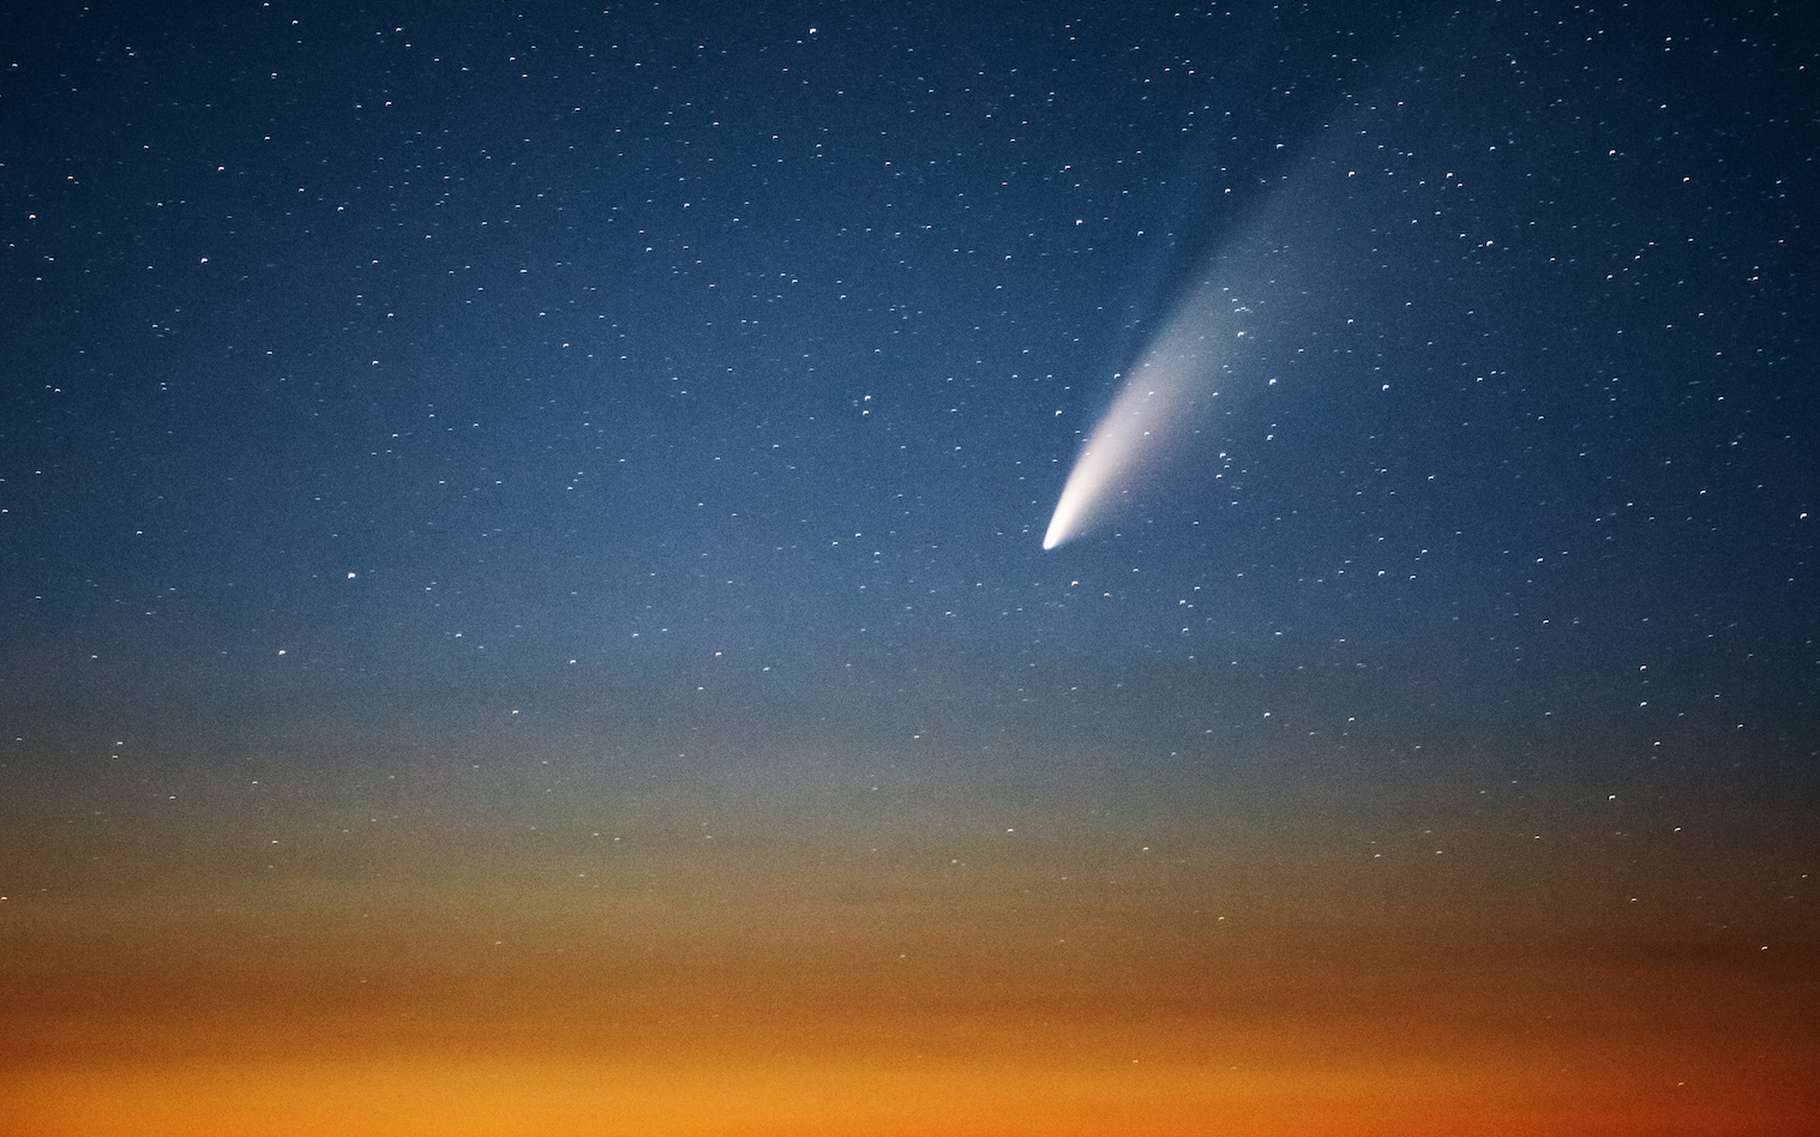 Images magnifiques d'une comète qui pourrait être interstellaire en train de passer près du Soleil